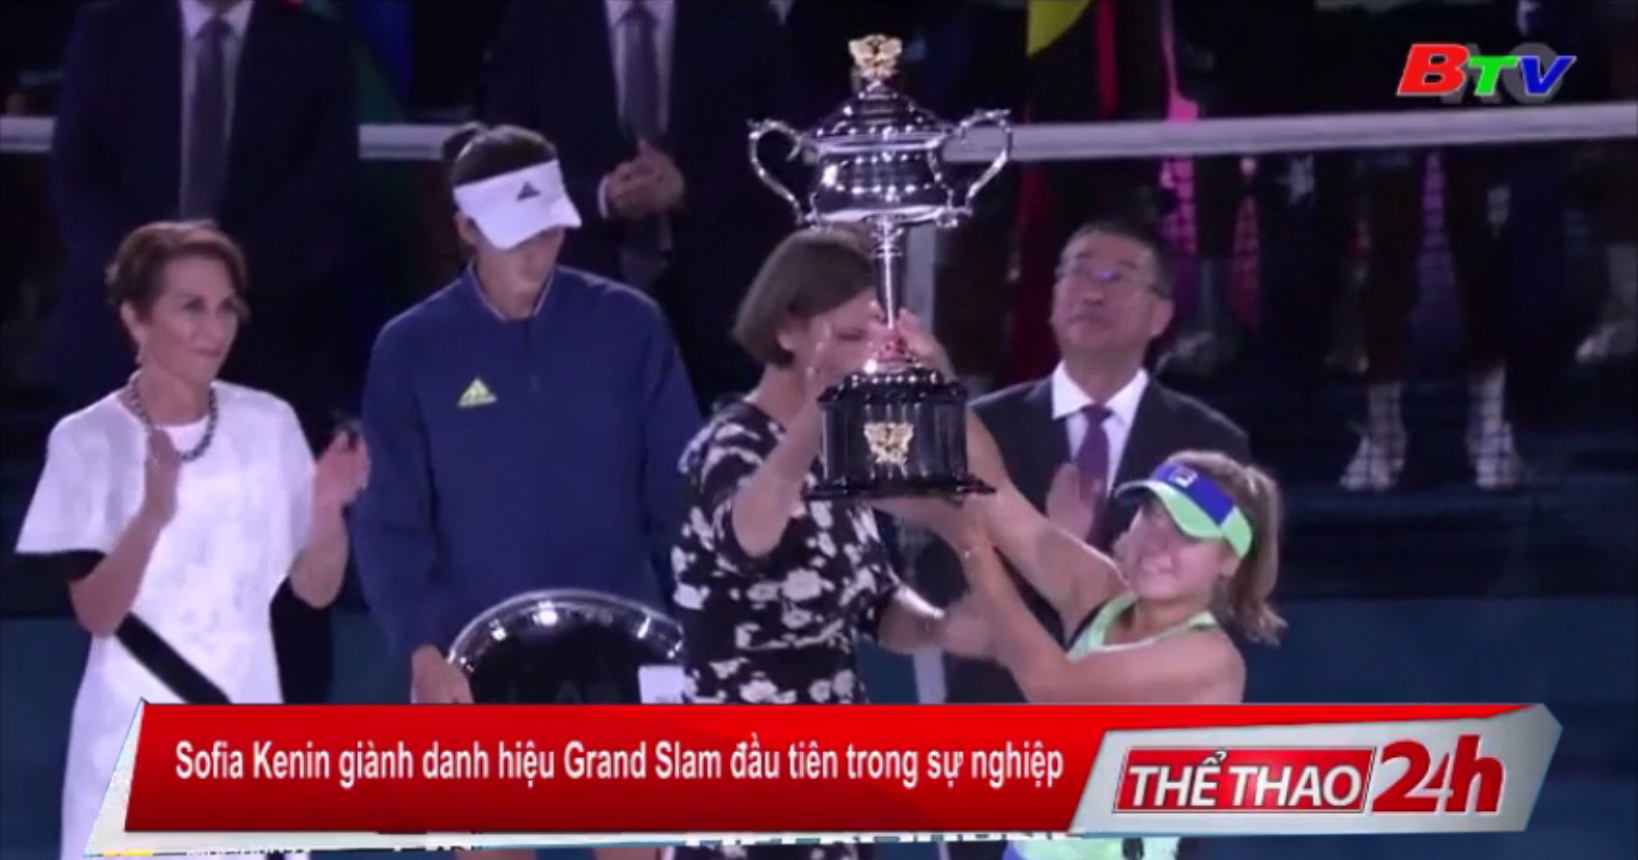 Sofia Kenin giành danh hiệu Grand Slam đầu tiên trong sự nghiệp